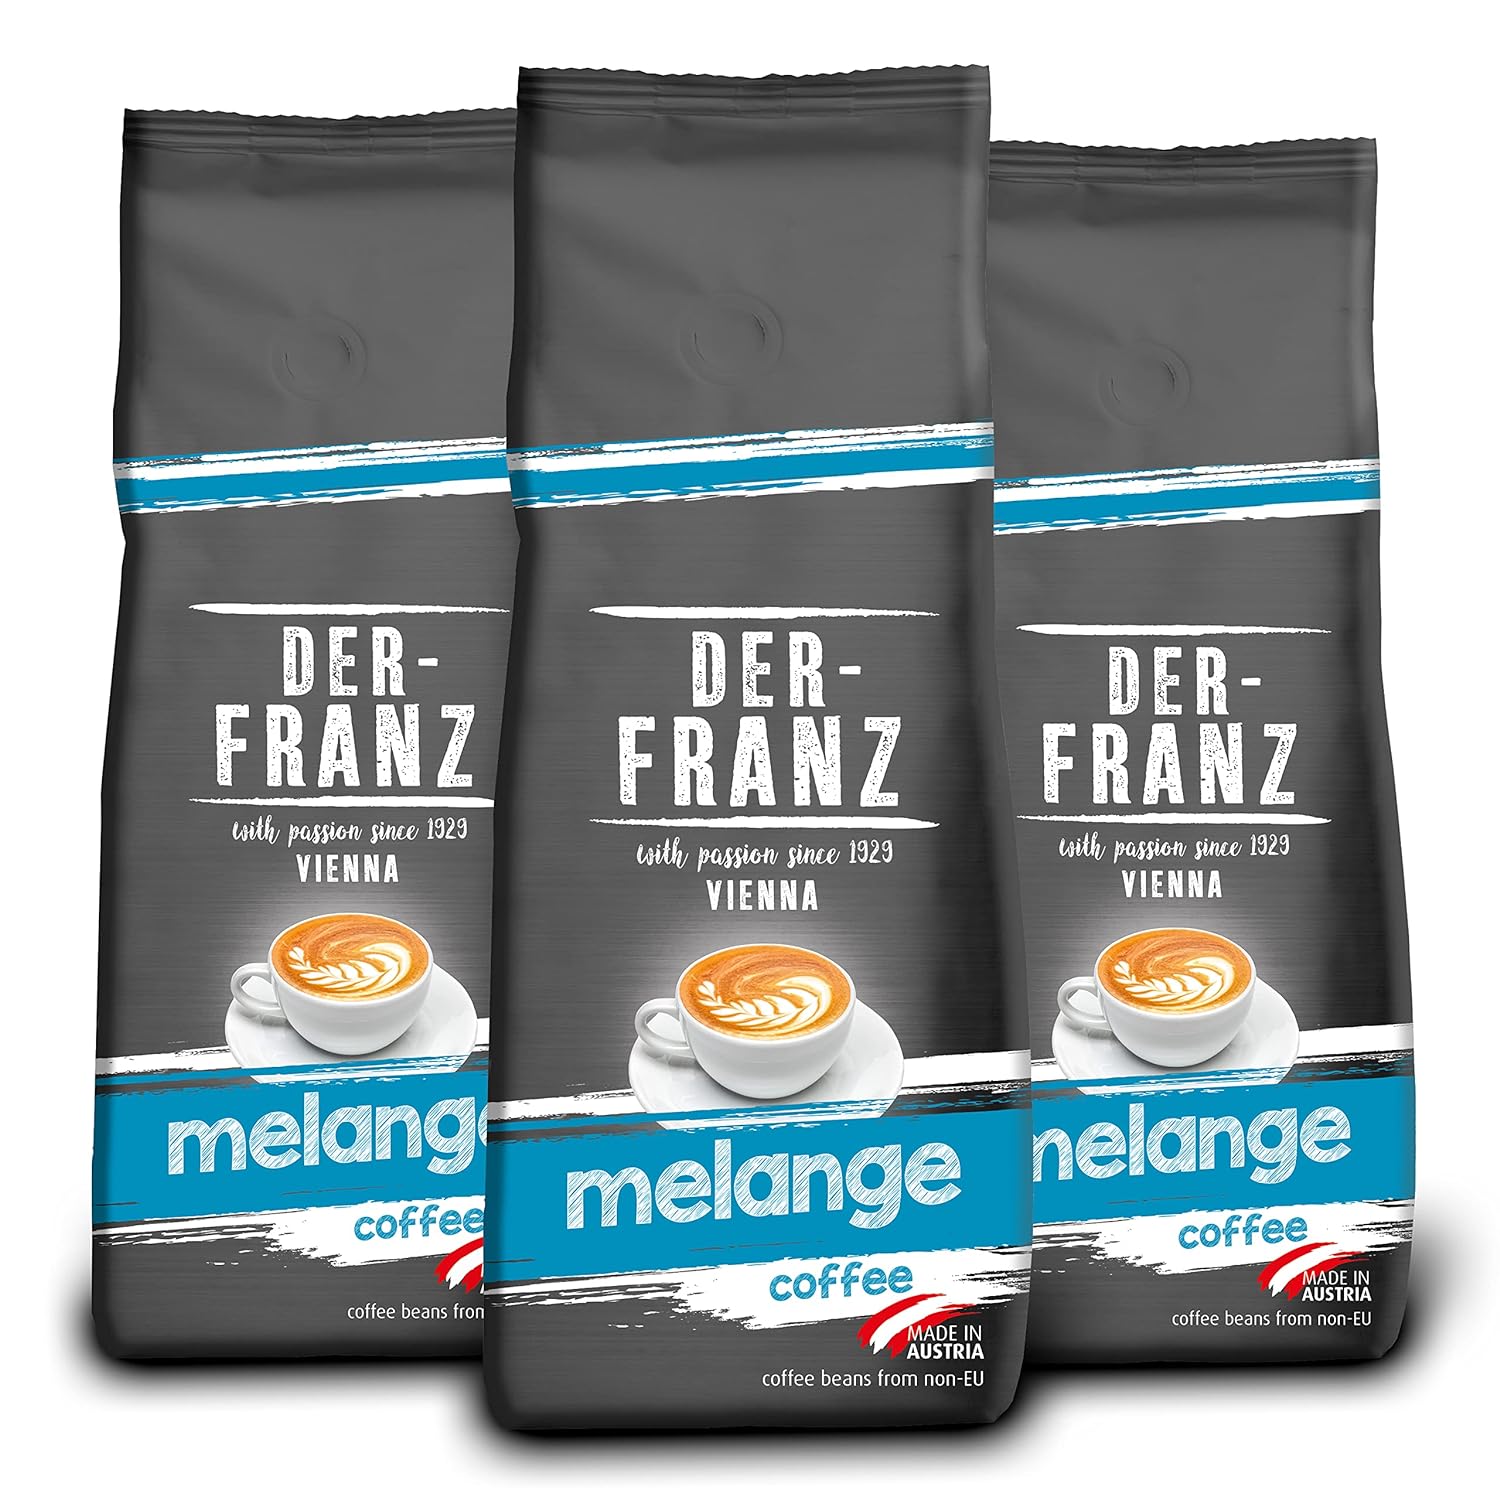 Der-Franz Melange Coffee Whole Bean 3 x 500g